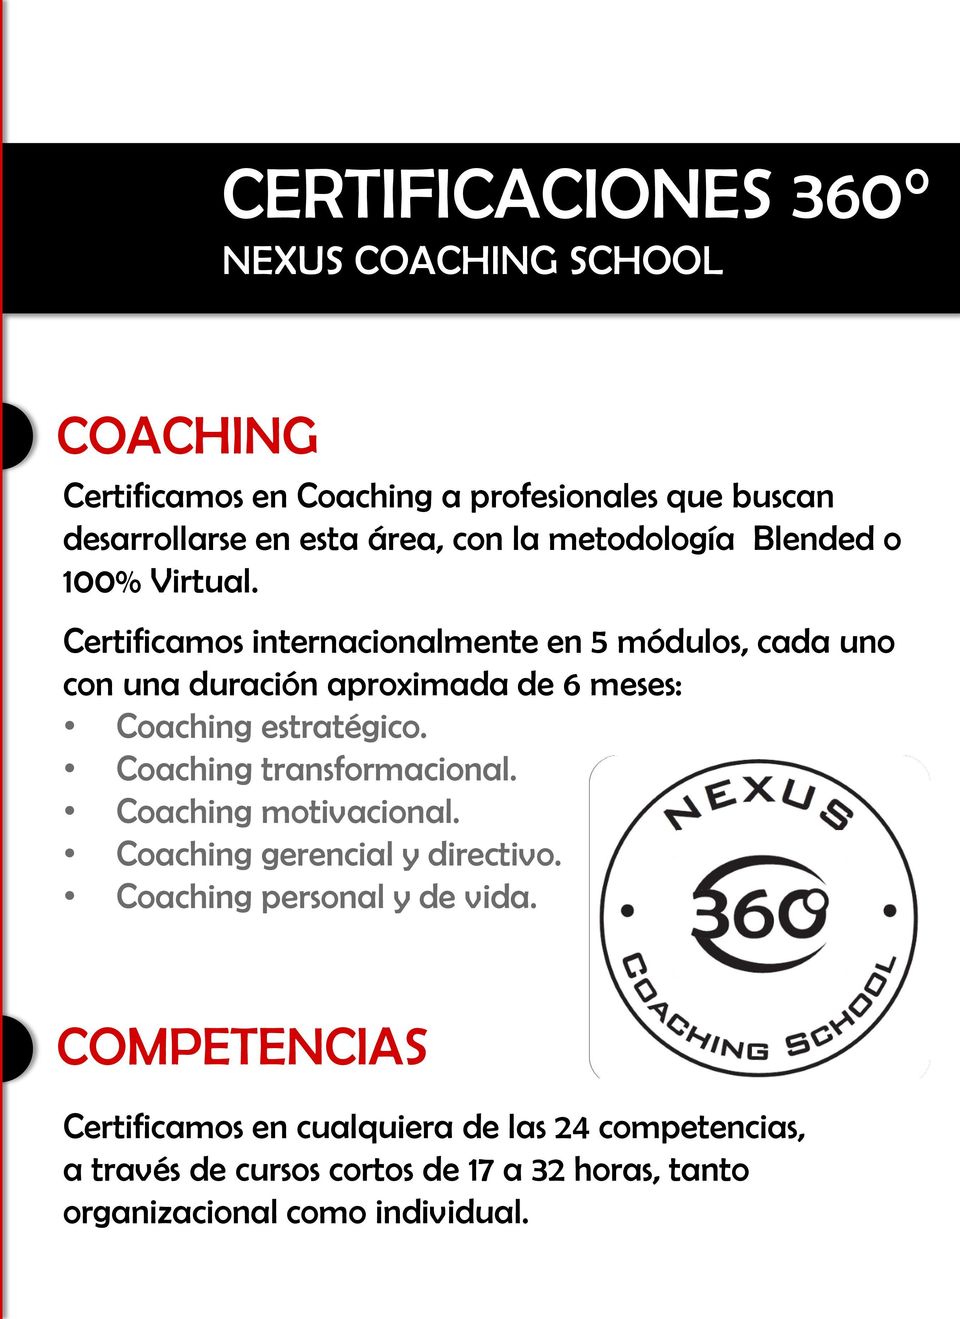 Certificamos internacionalmente en 5 módulos, cada uno con una duración aproximada de 6 meses: Coaching estratégico.